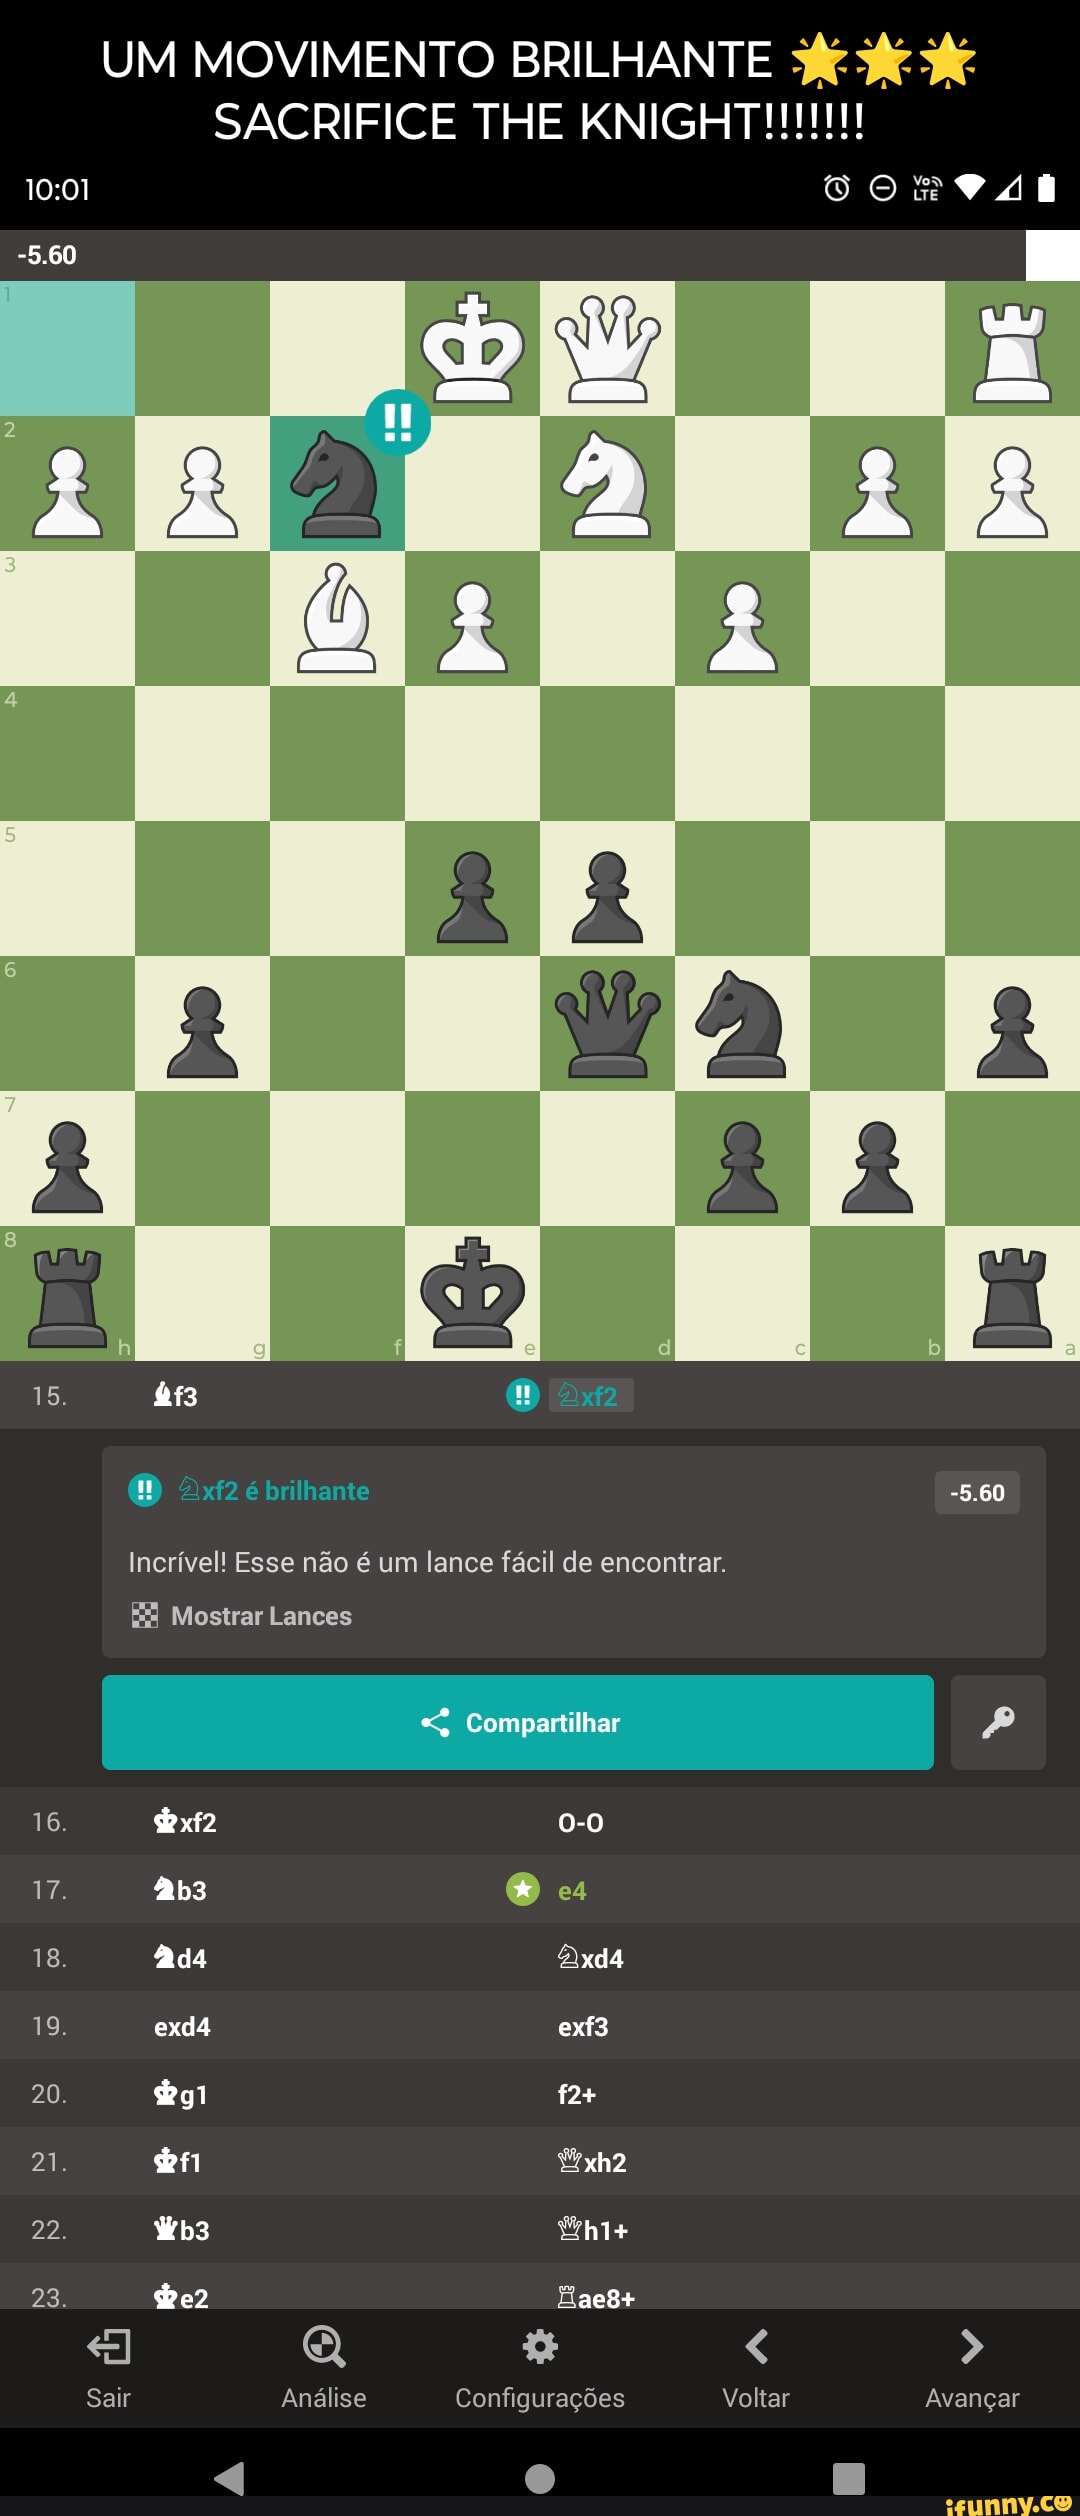 Xadrez é arte - Meme doido do @chess_warriors_